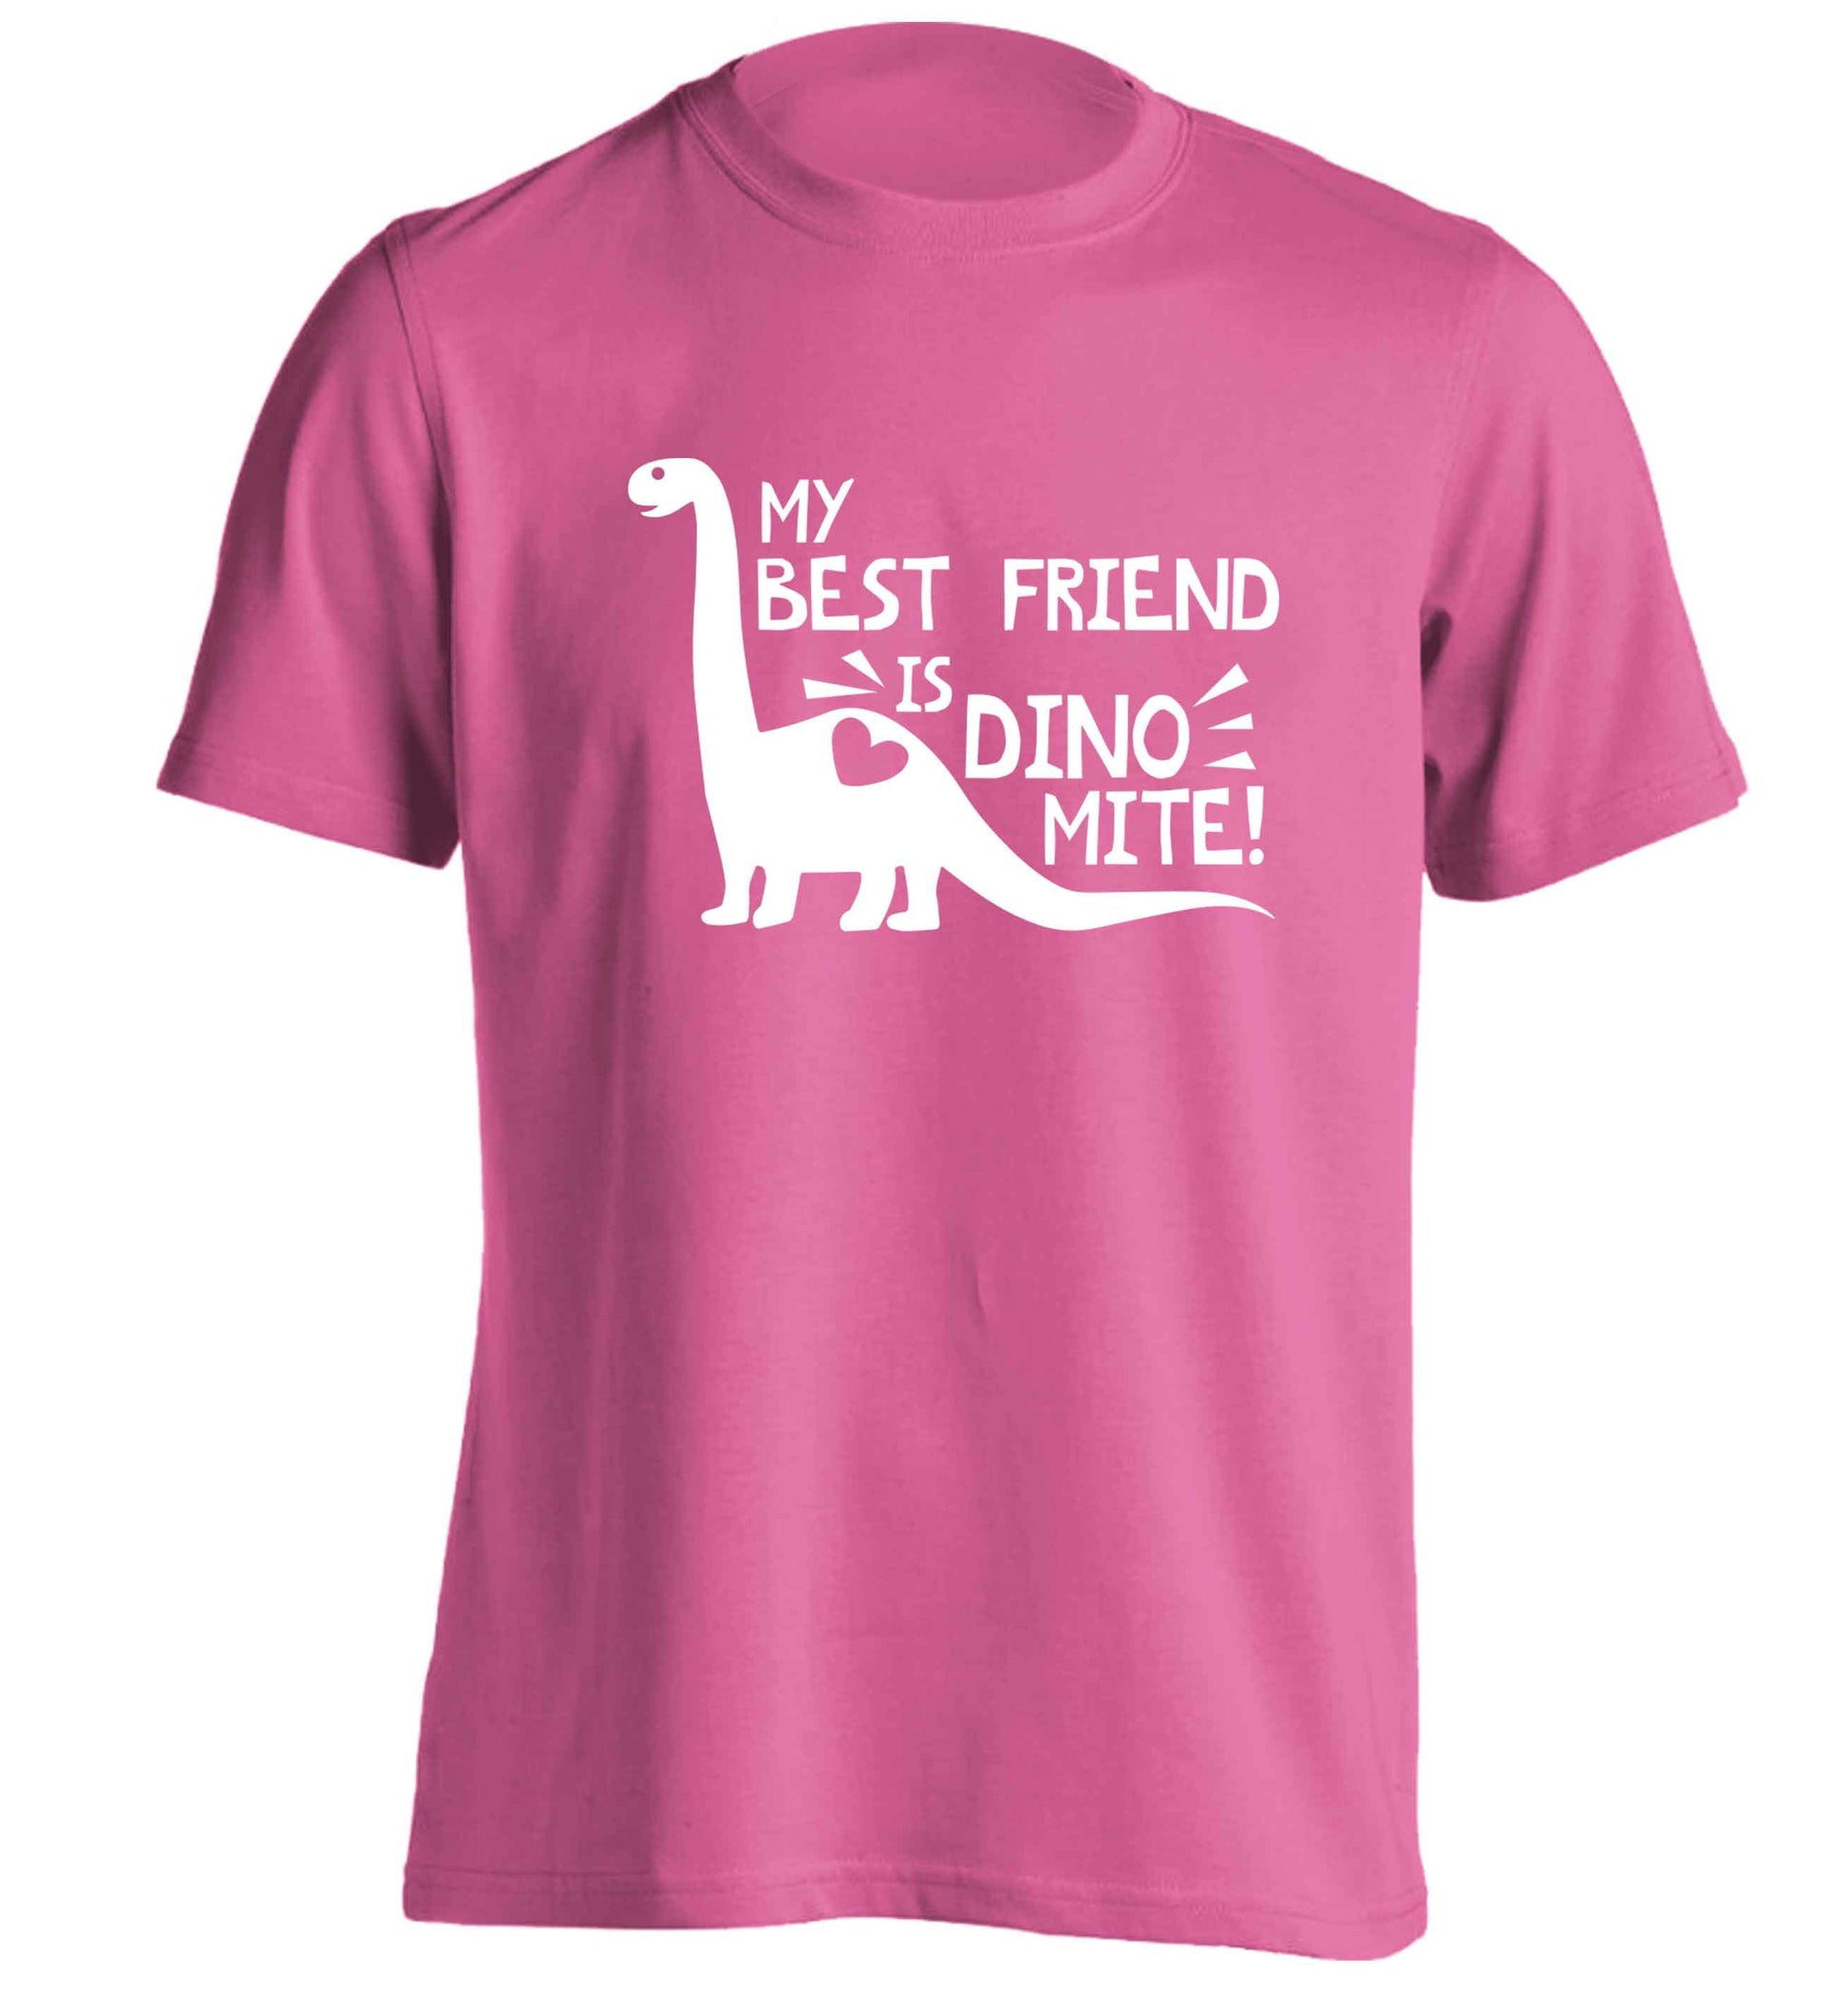 My best friend is dinomite! adults unisex pink Tshirt 2XL